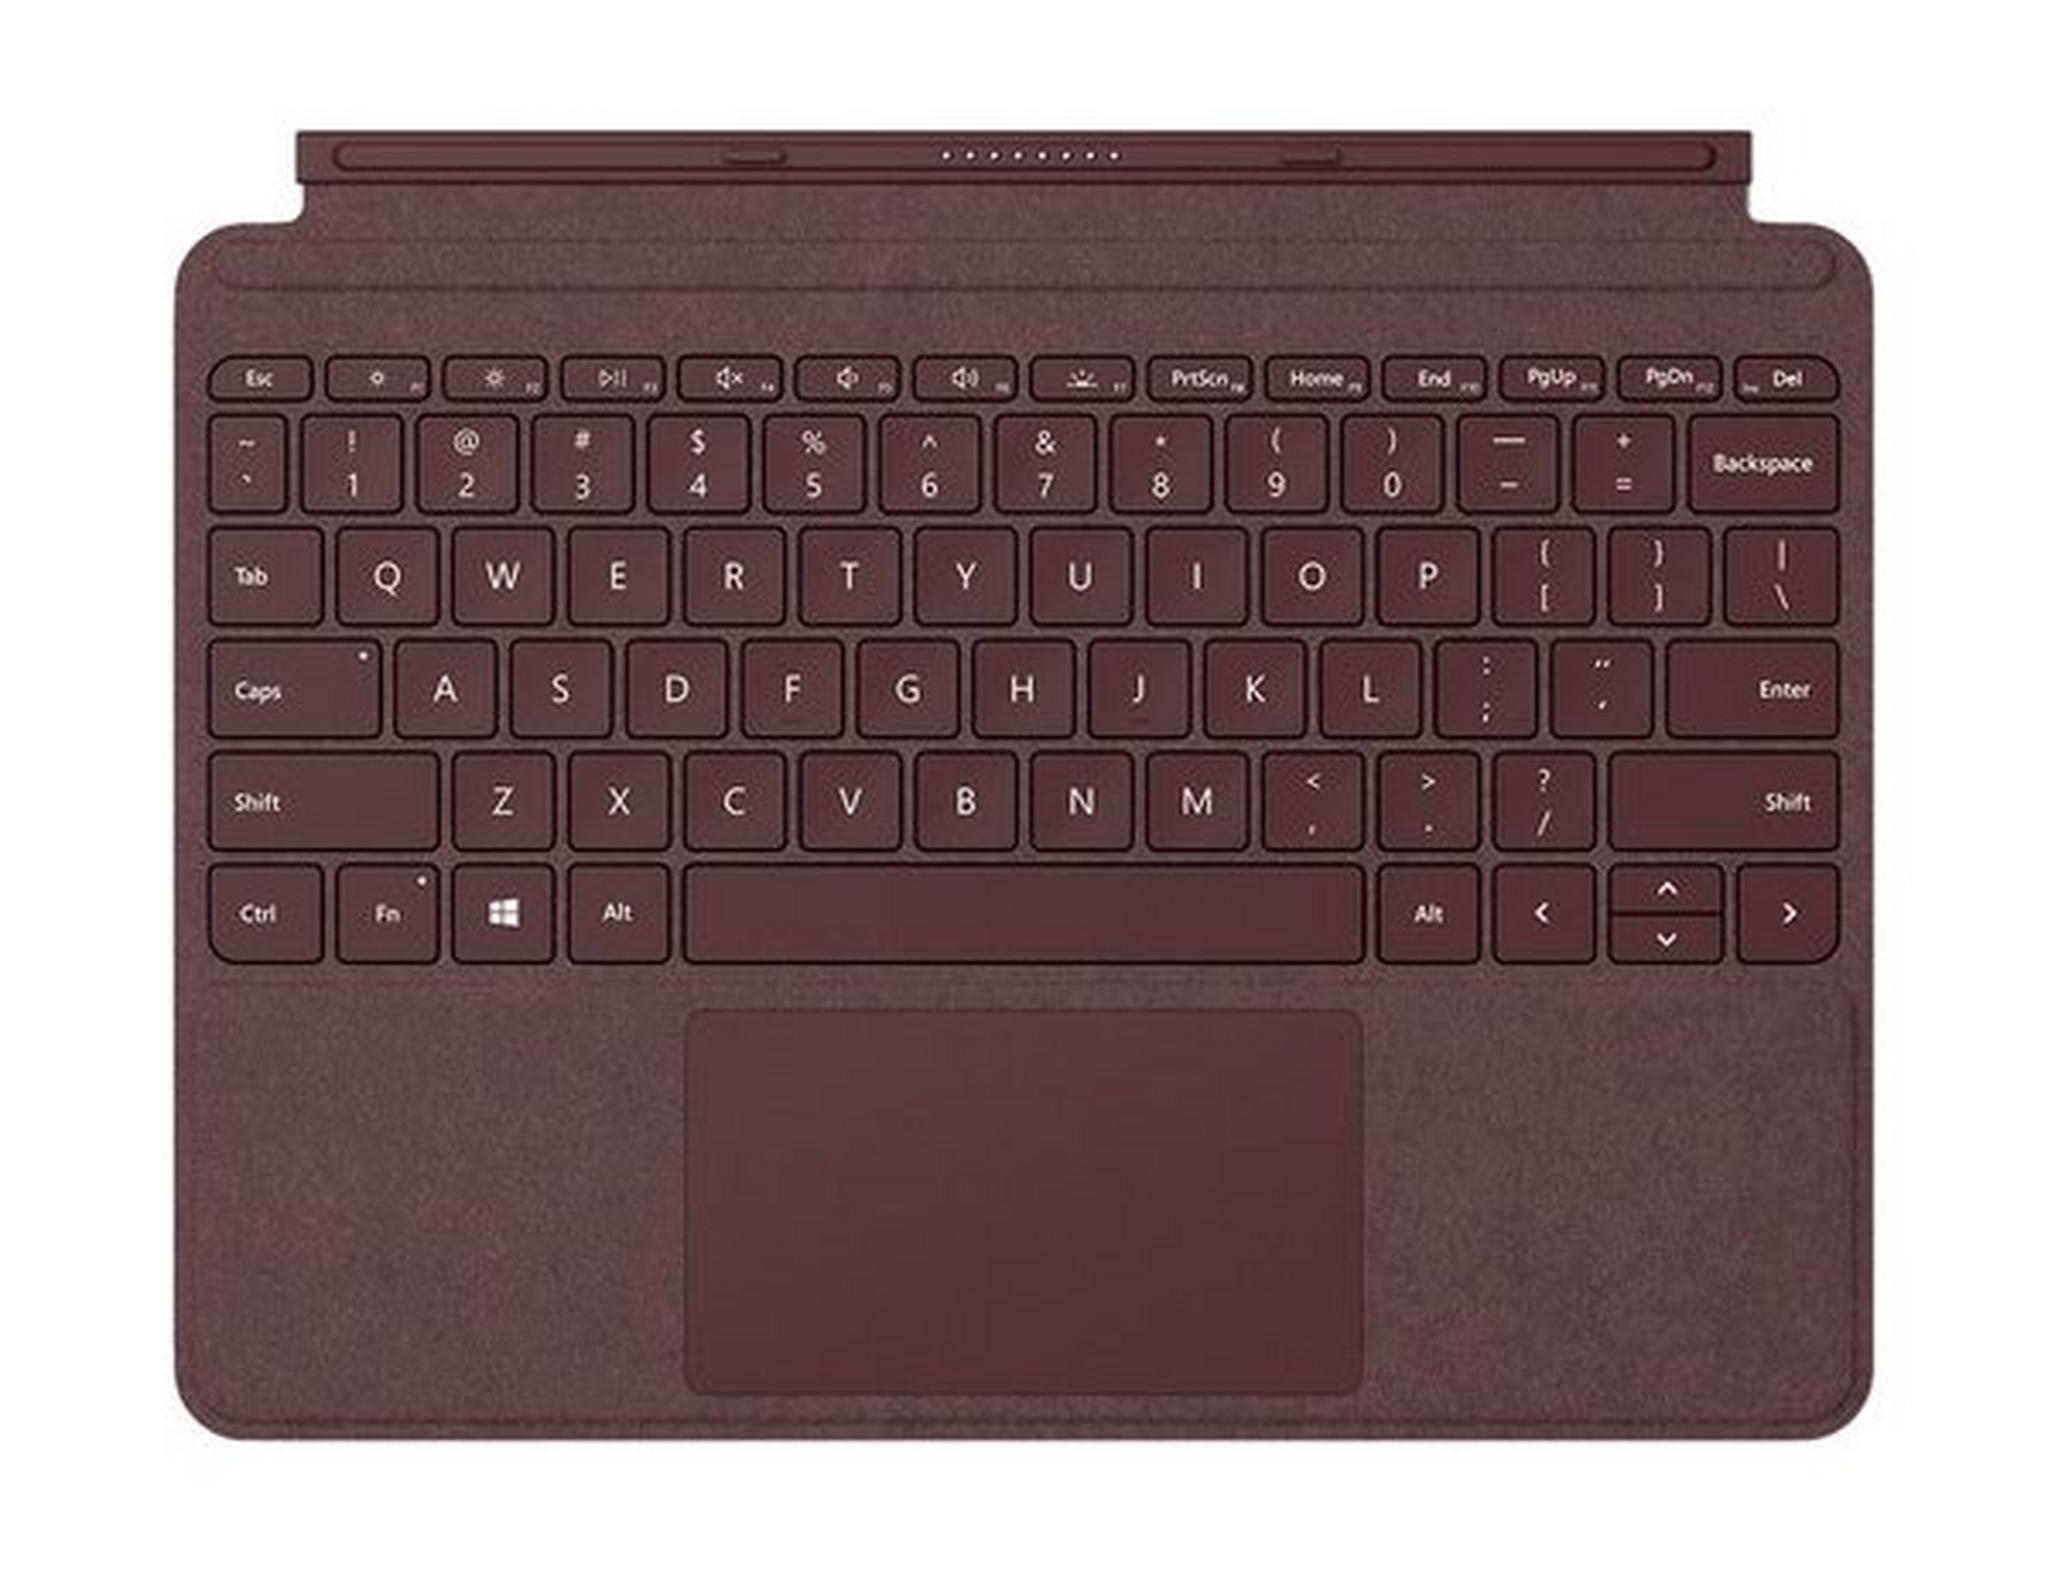 غطاء لوحة المفاتيح لجهاز ميكروسوفت سيرفس جو - أحمر